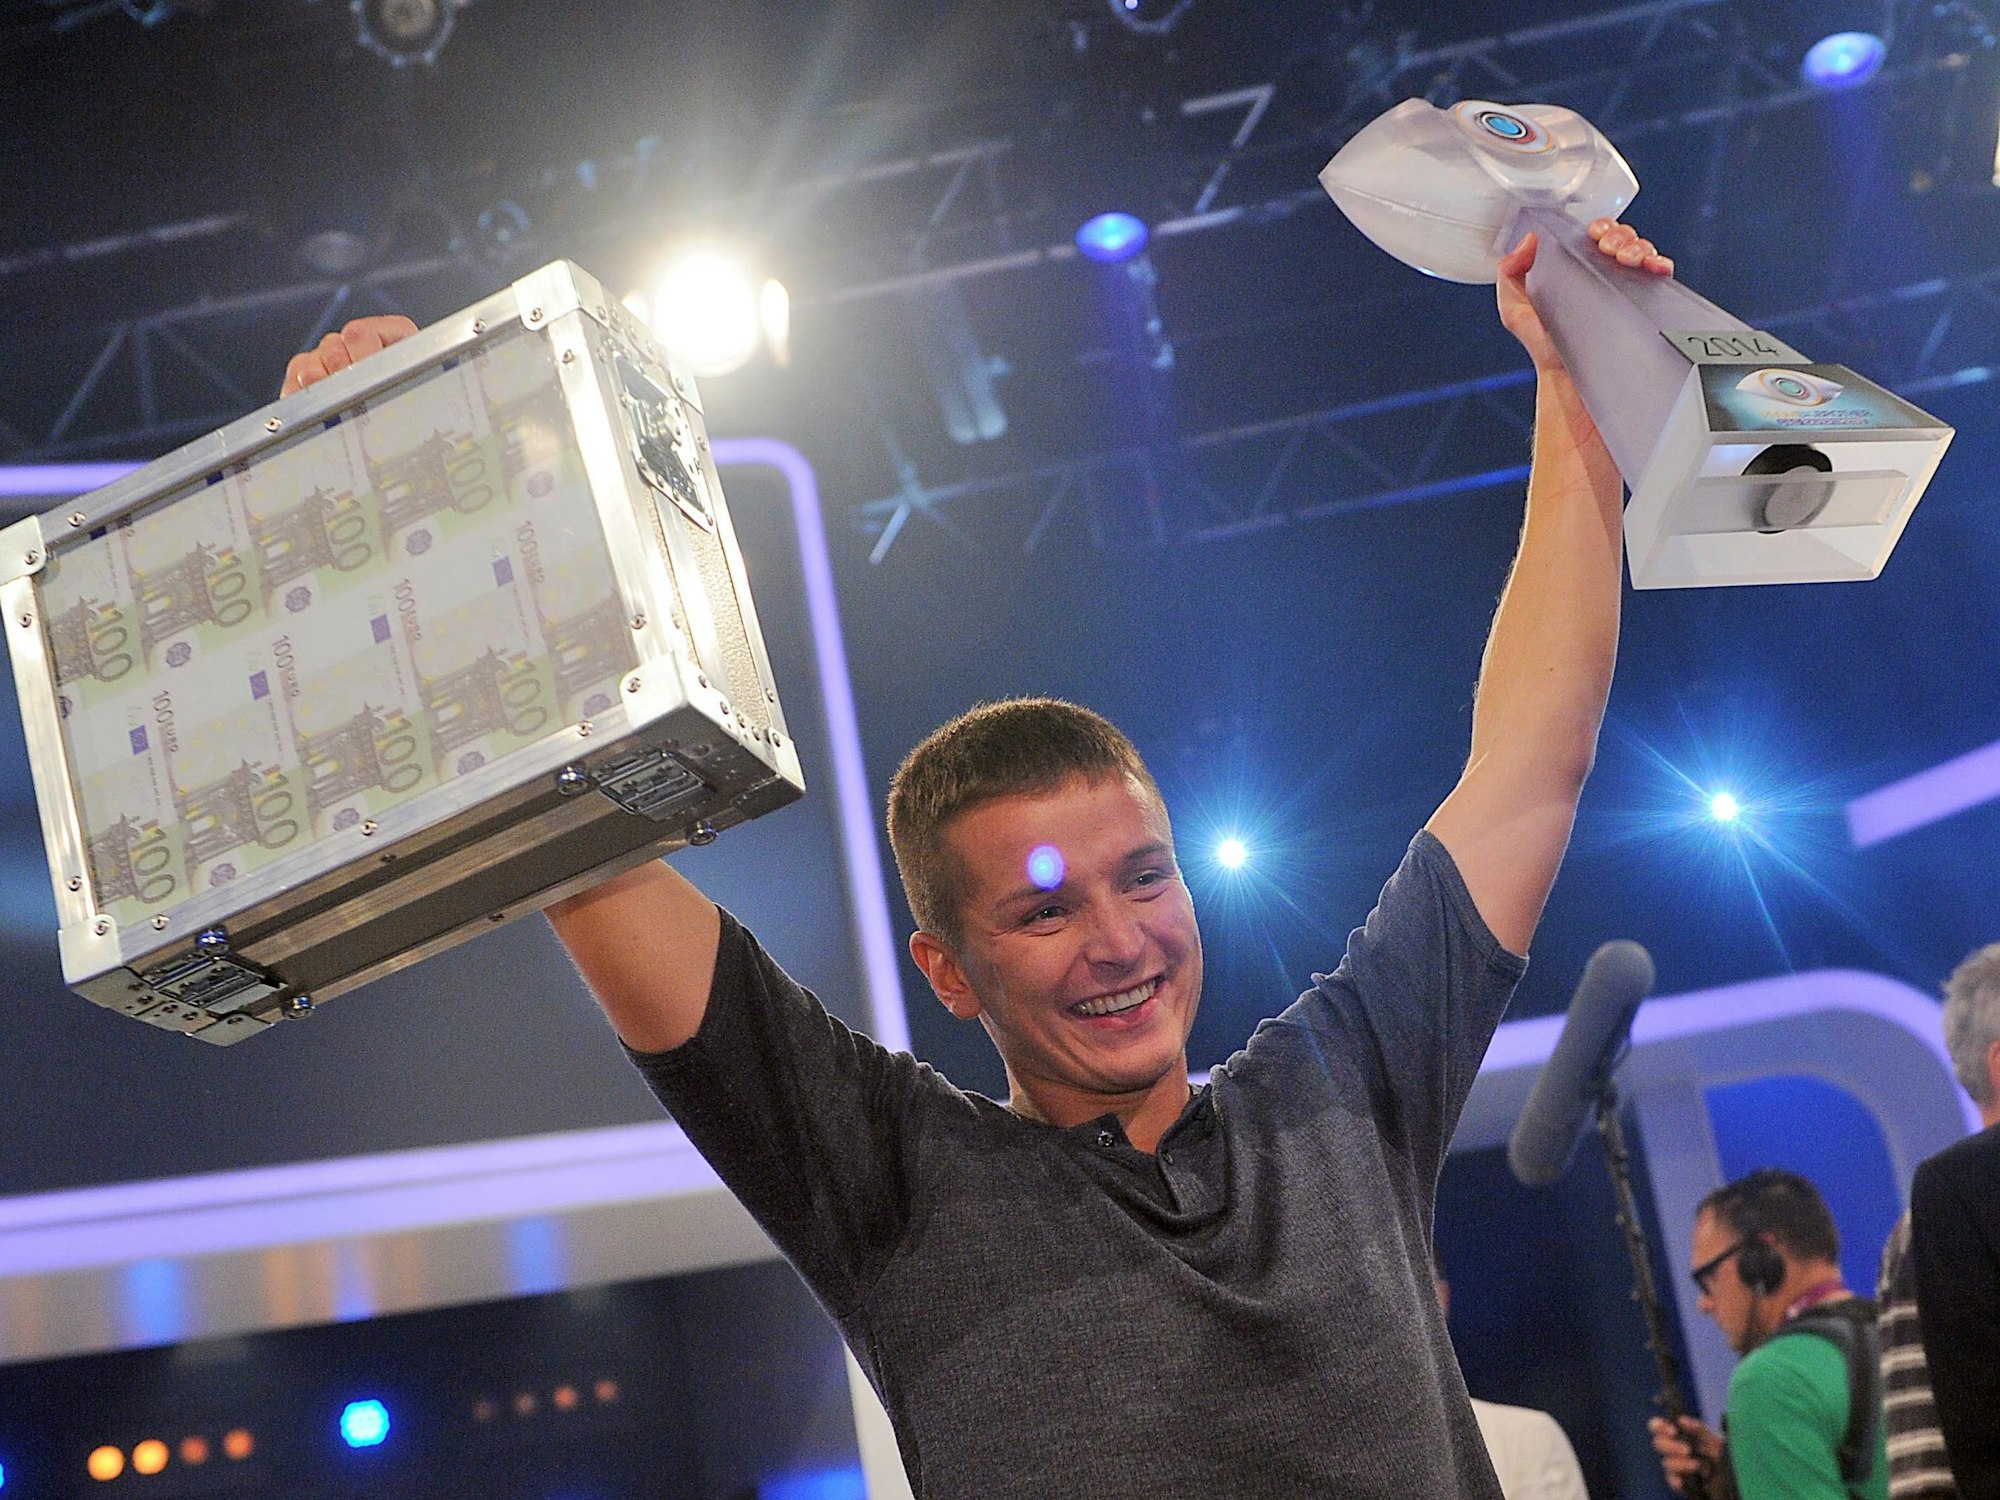 Aaron Troscke freut sich über einen Geldkoffer in Höhe von 100.000 Euro, die der einstige „Wer wird Millionär?“-Kandidat auf dem Foto überglücklich in die Luft hält.